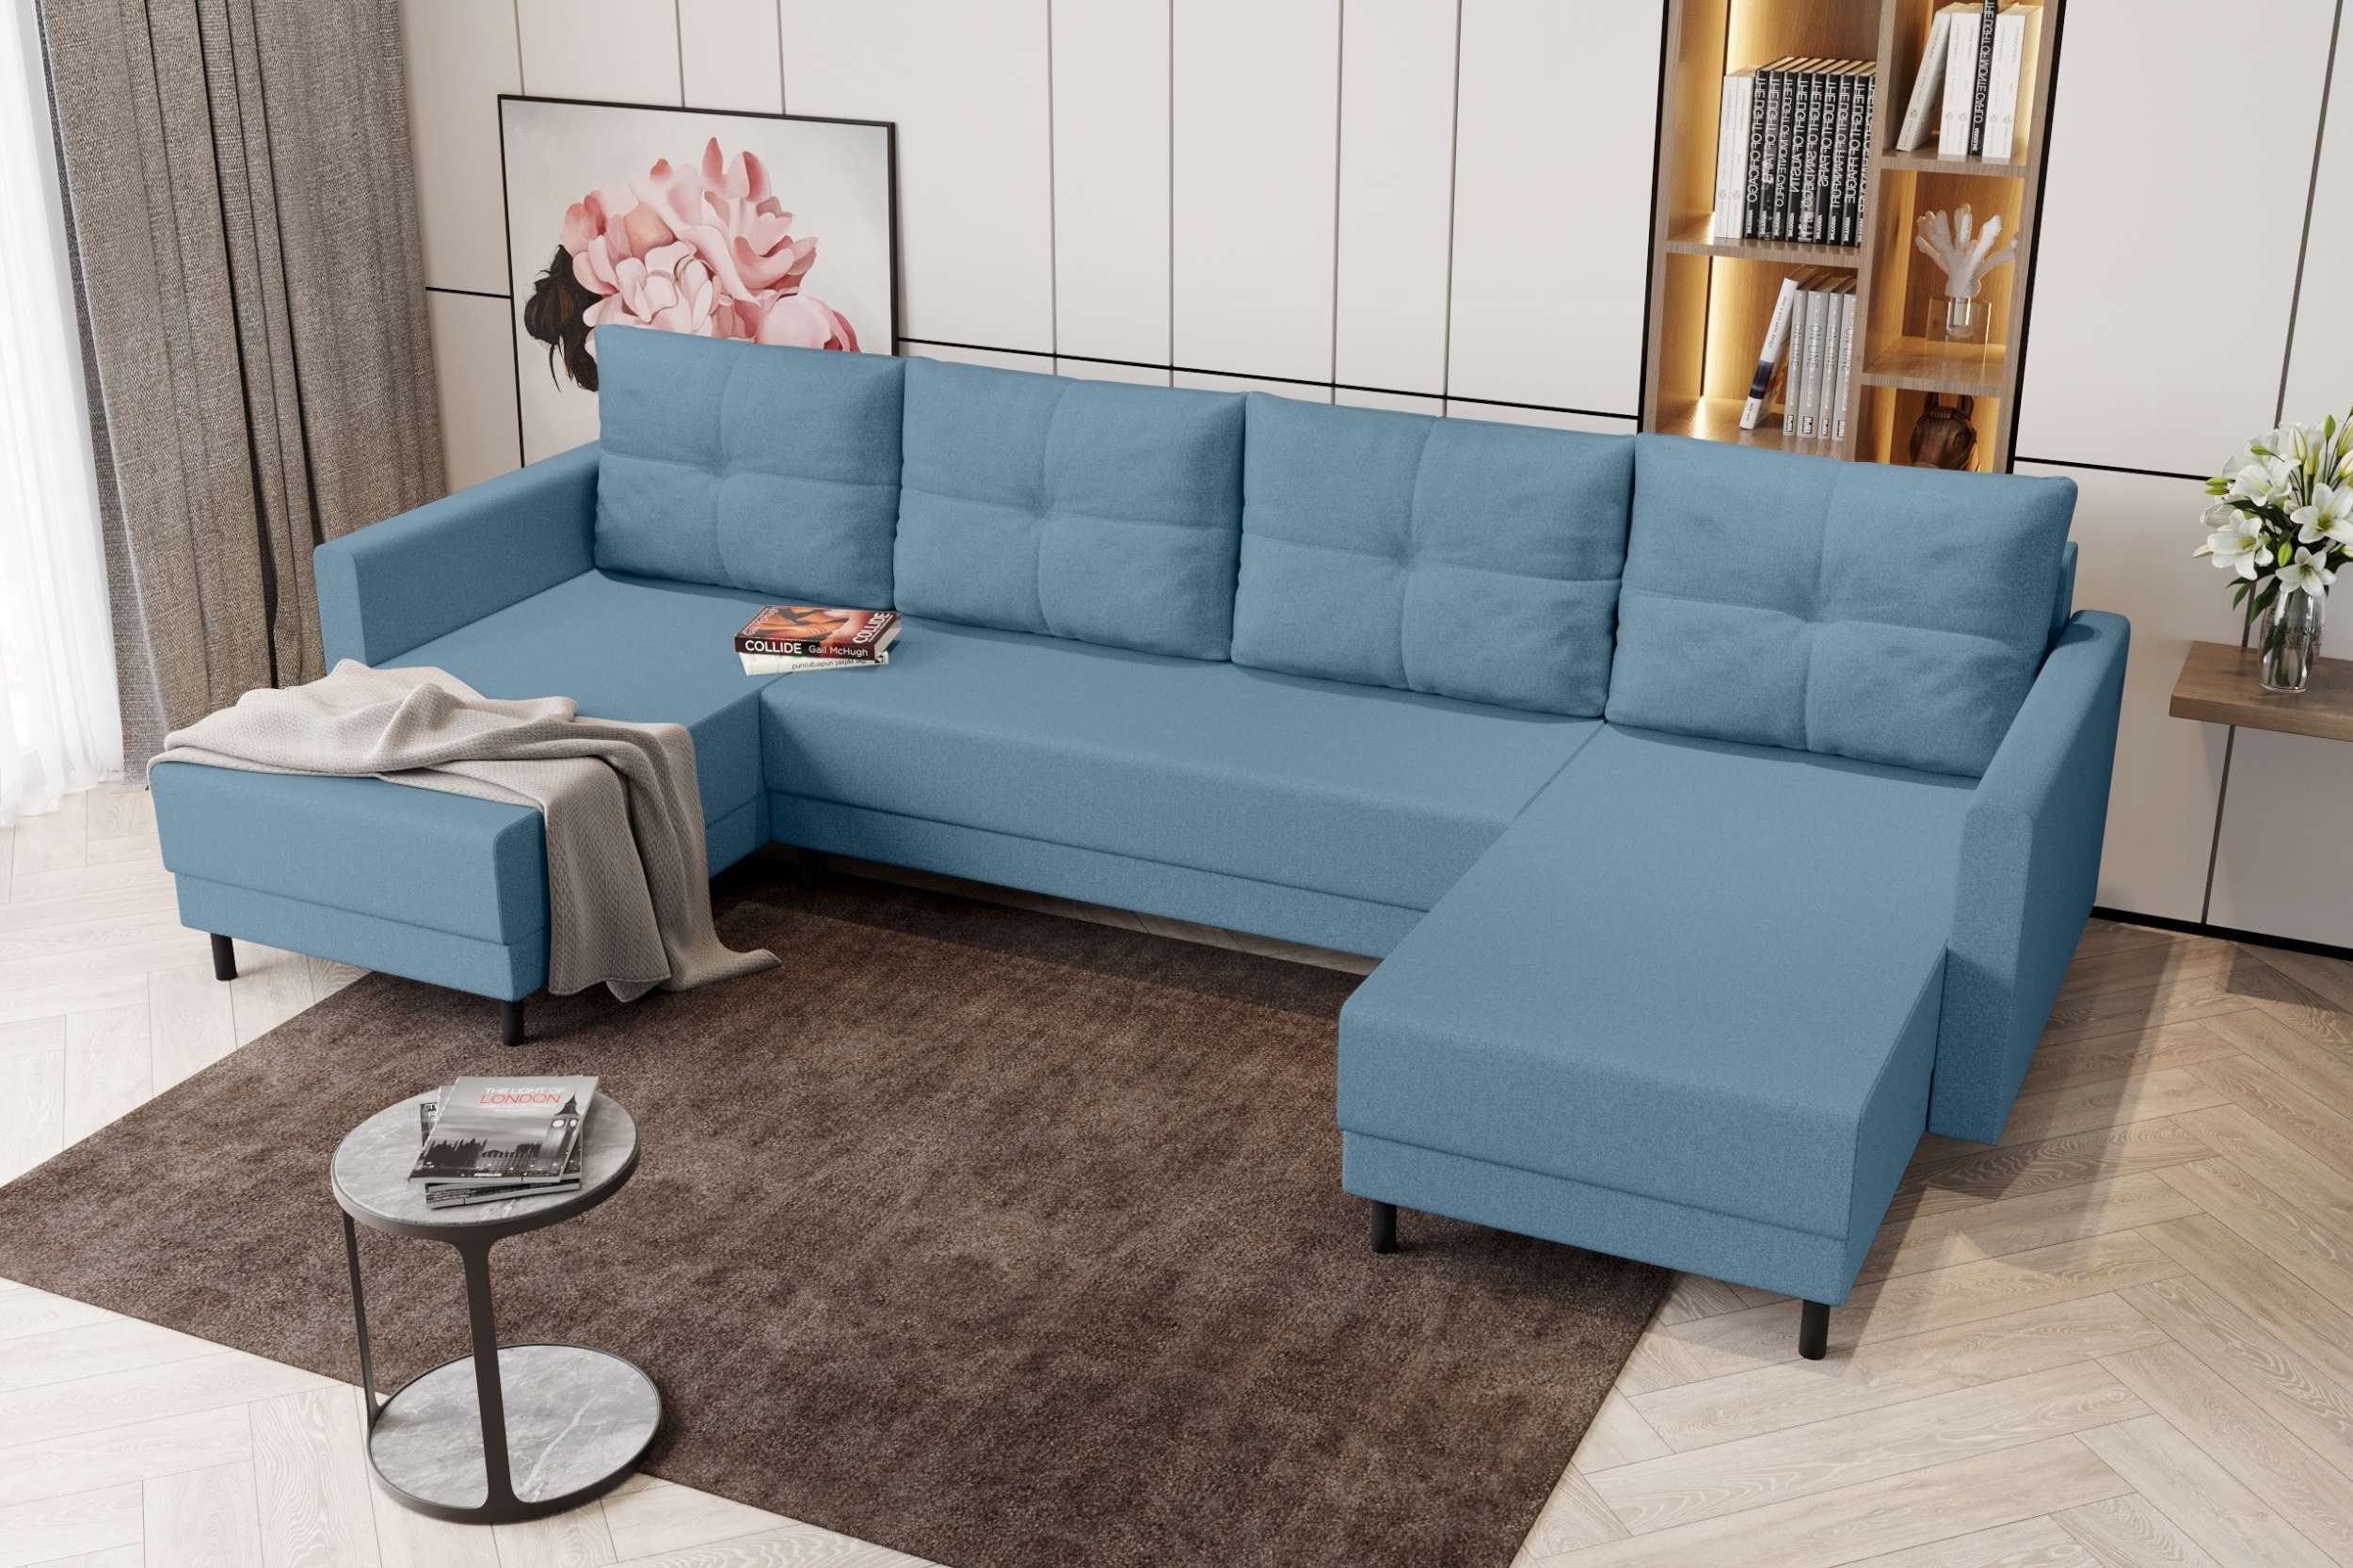 Sofa, U-Form, Bettfunktion, Design Modern mit Eckcouch, Bettkasten, Sitzkomfort, Stylefy Wohnlandschaft mit Selena,